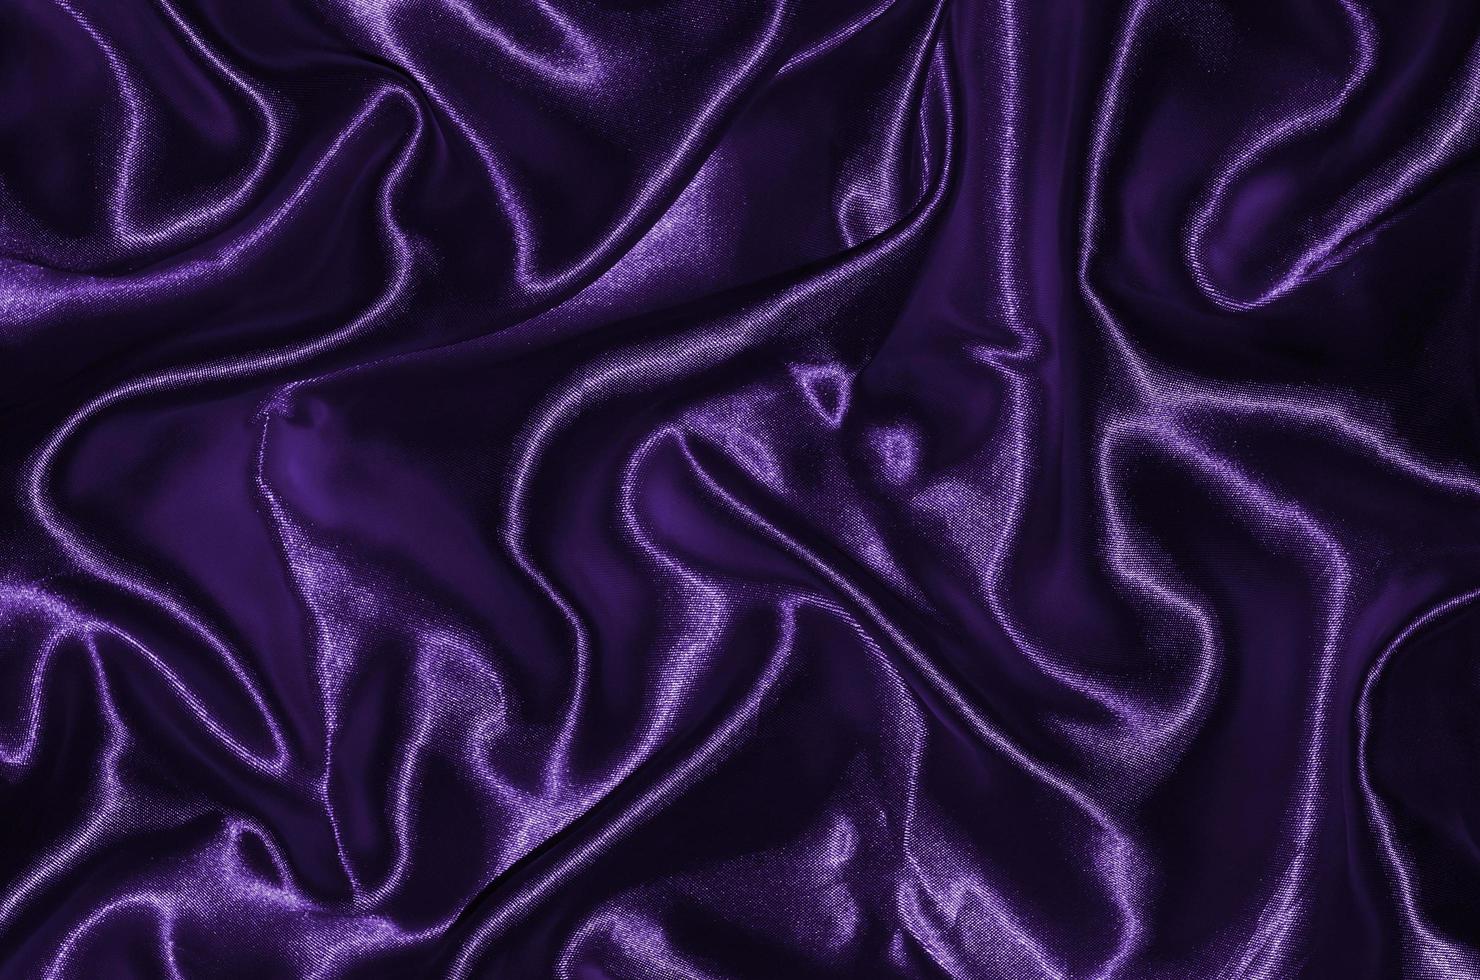 Hintergrund und Tapete aus lila Stoff und gestreiftem Textil foto